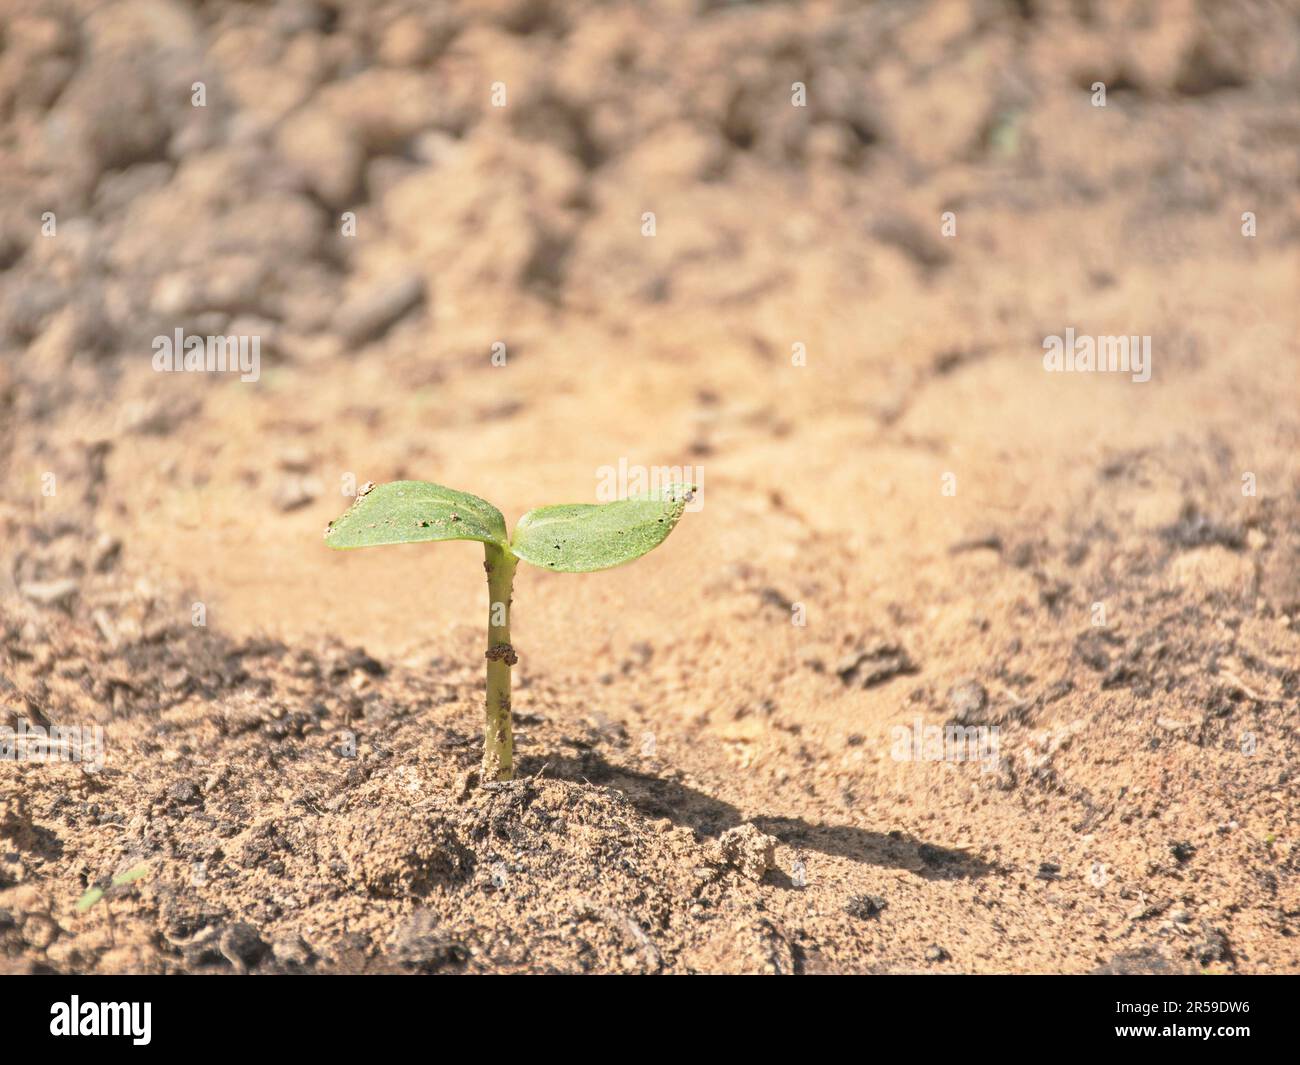 Ein grüner Sonnenblumenkeimling mit den ersten zwei Blättern, die gerade aus verschwommenem beigefarbenem und braunem sandigem Boden auftauchen Stockfoto